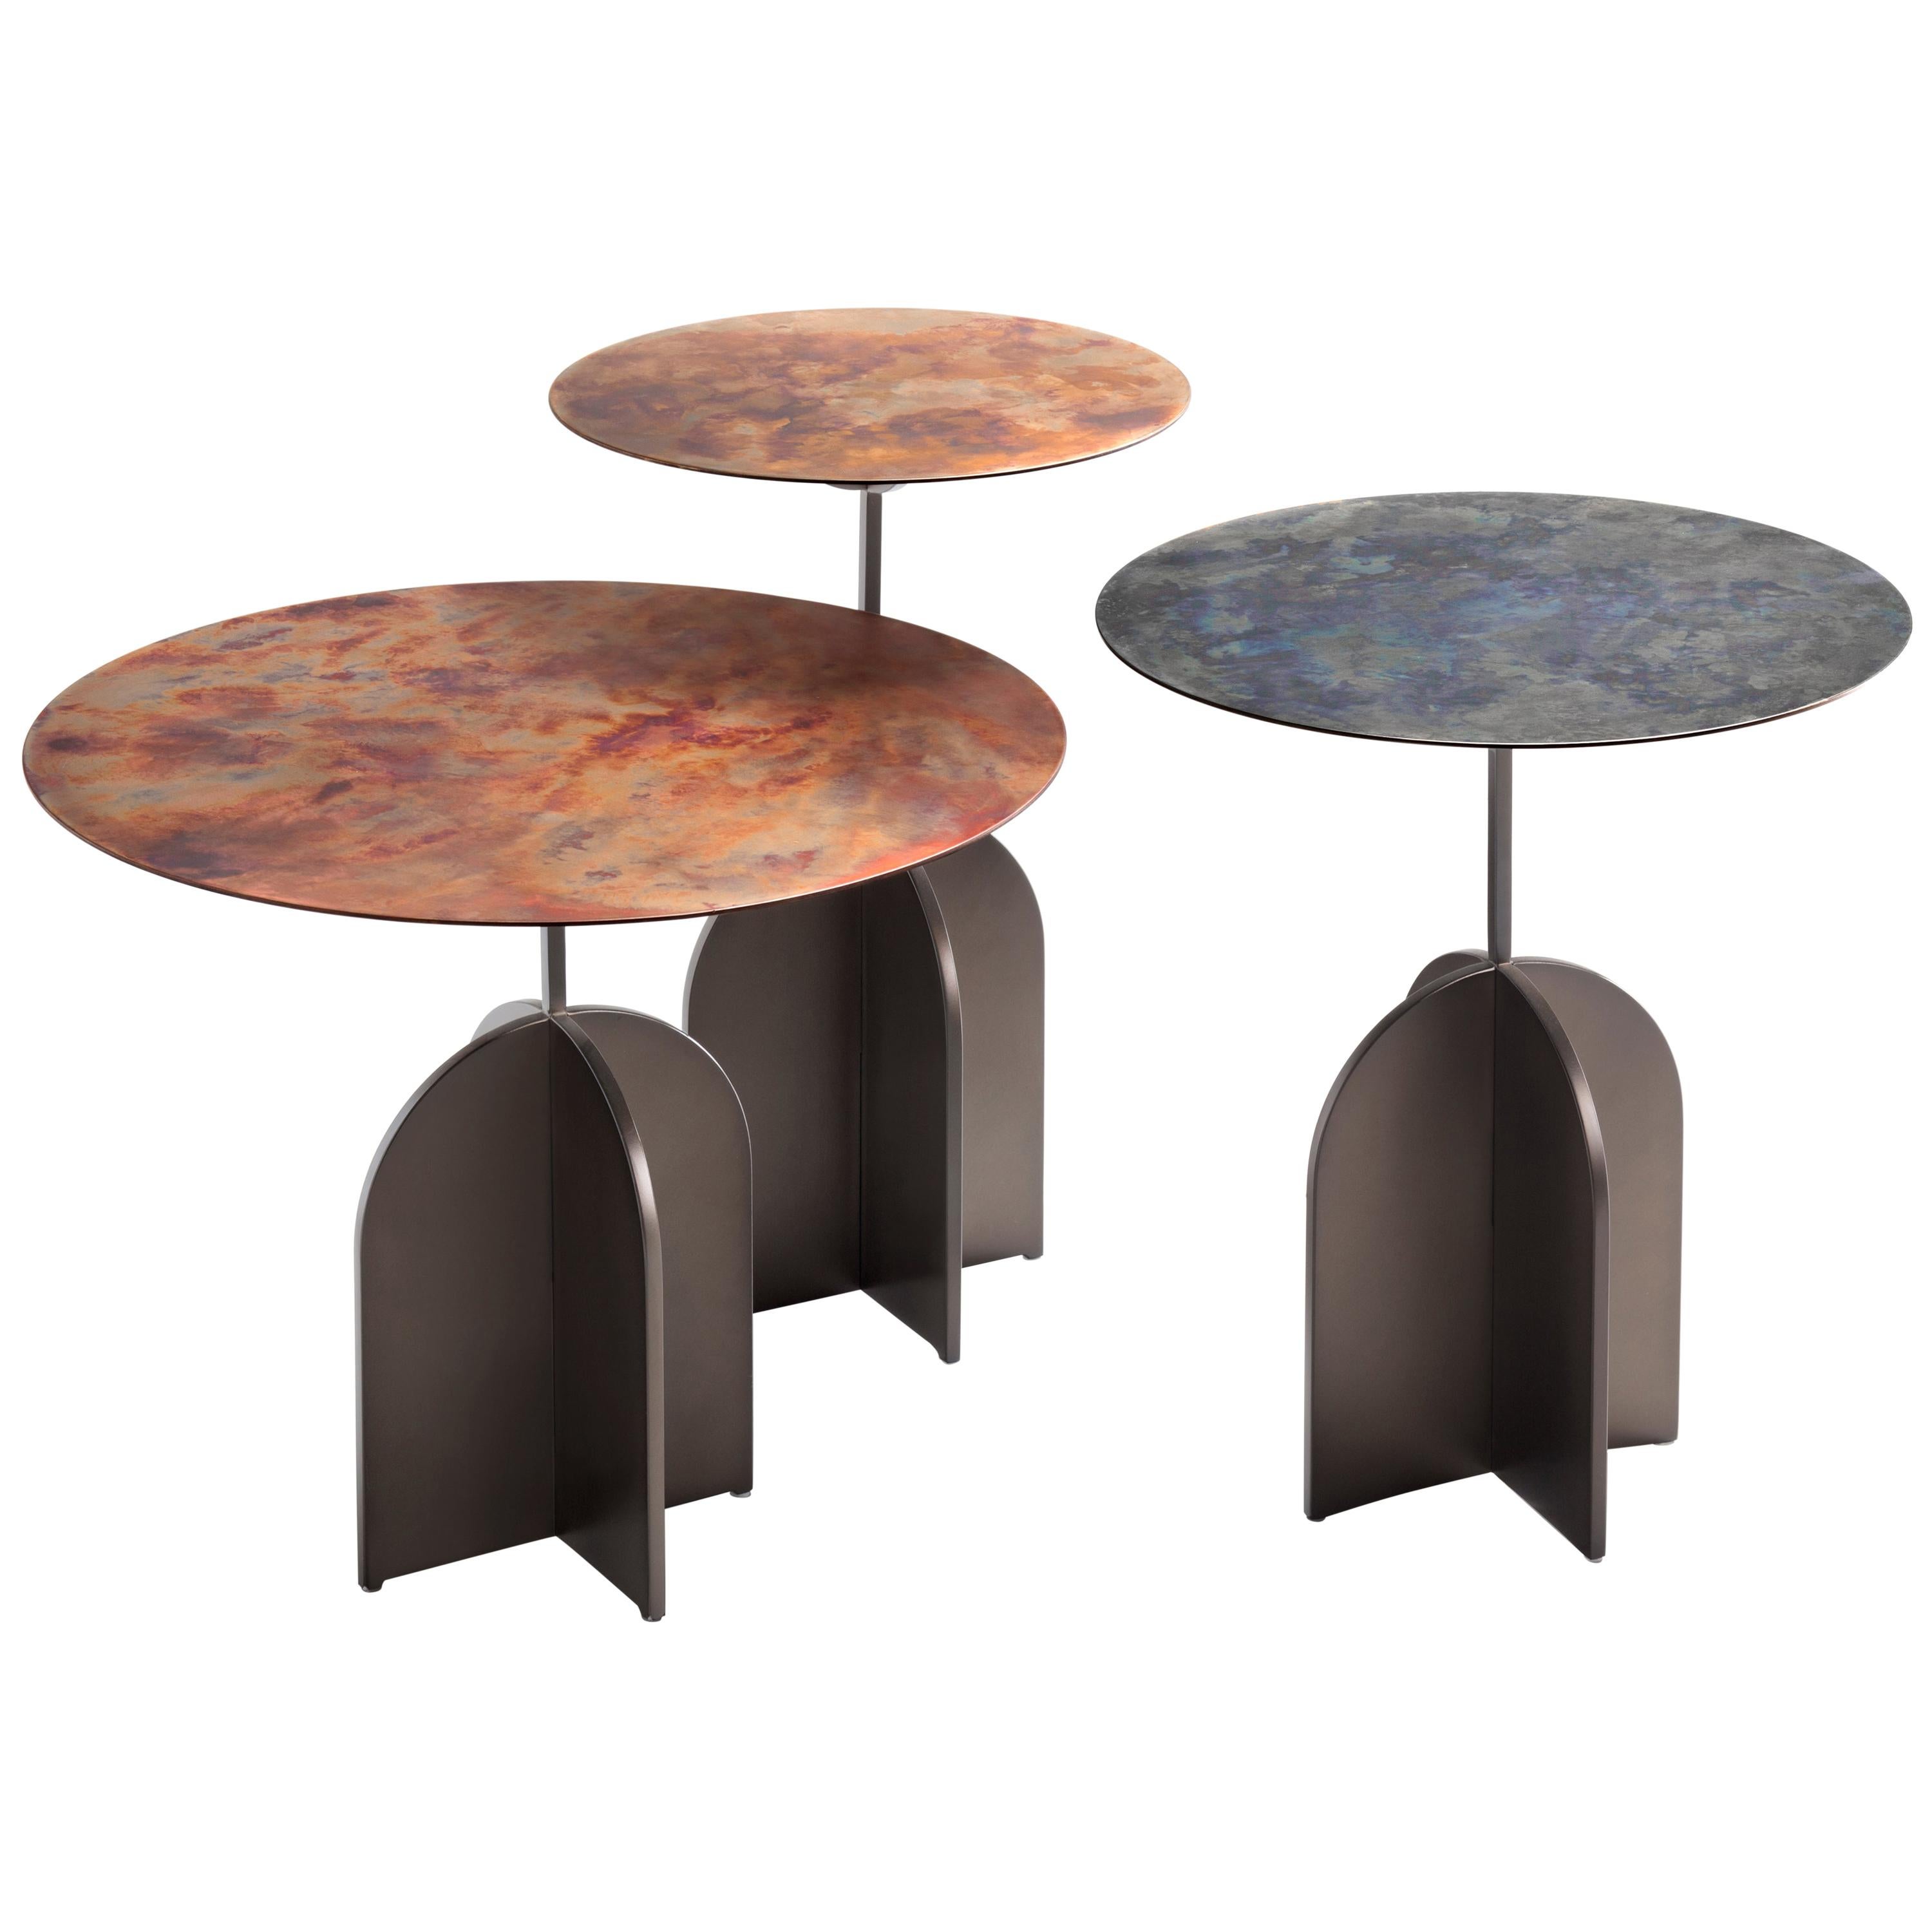 Table basse DeCastelli Nicola 50 avec plateau en acier inoxydable par IvDesign